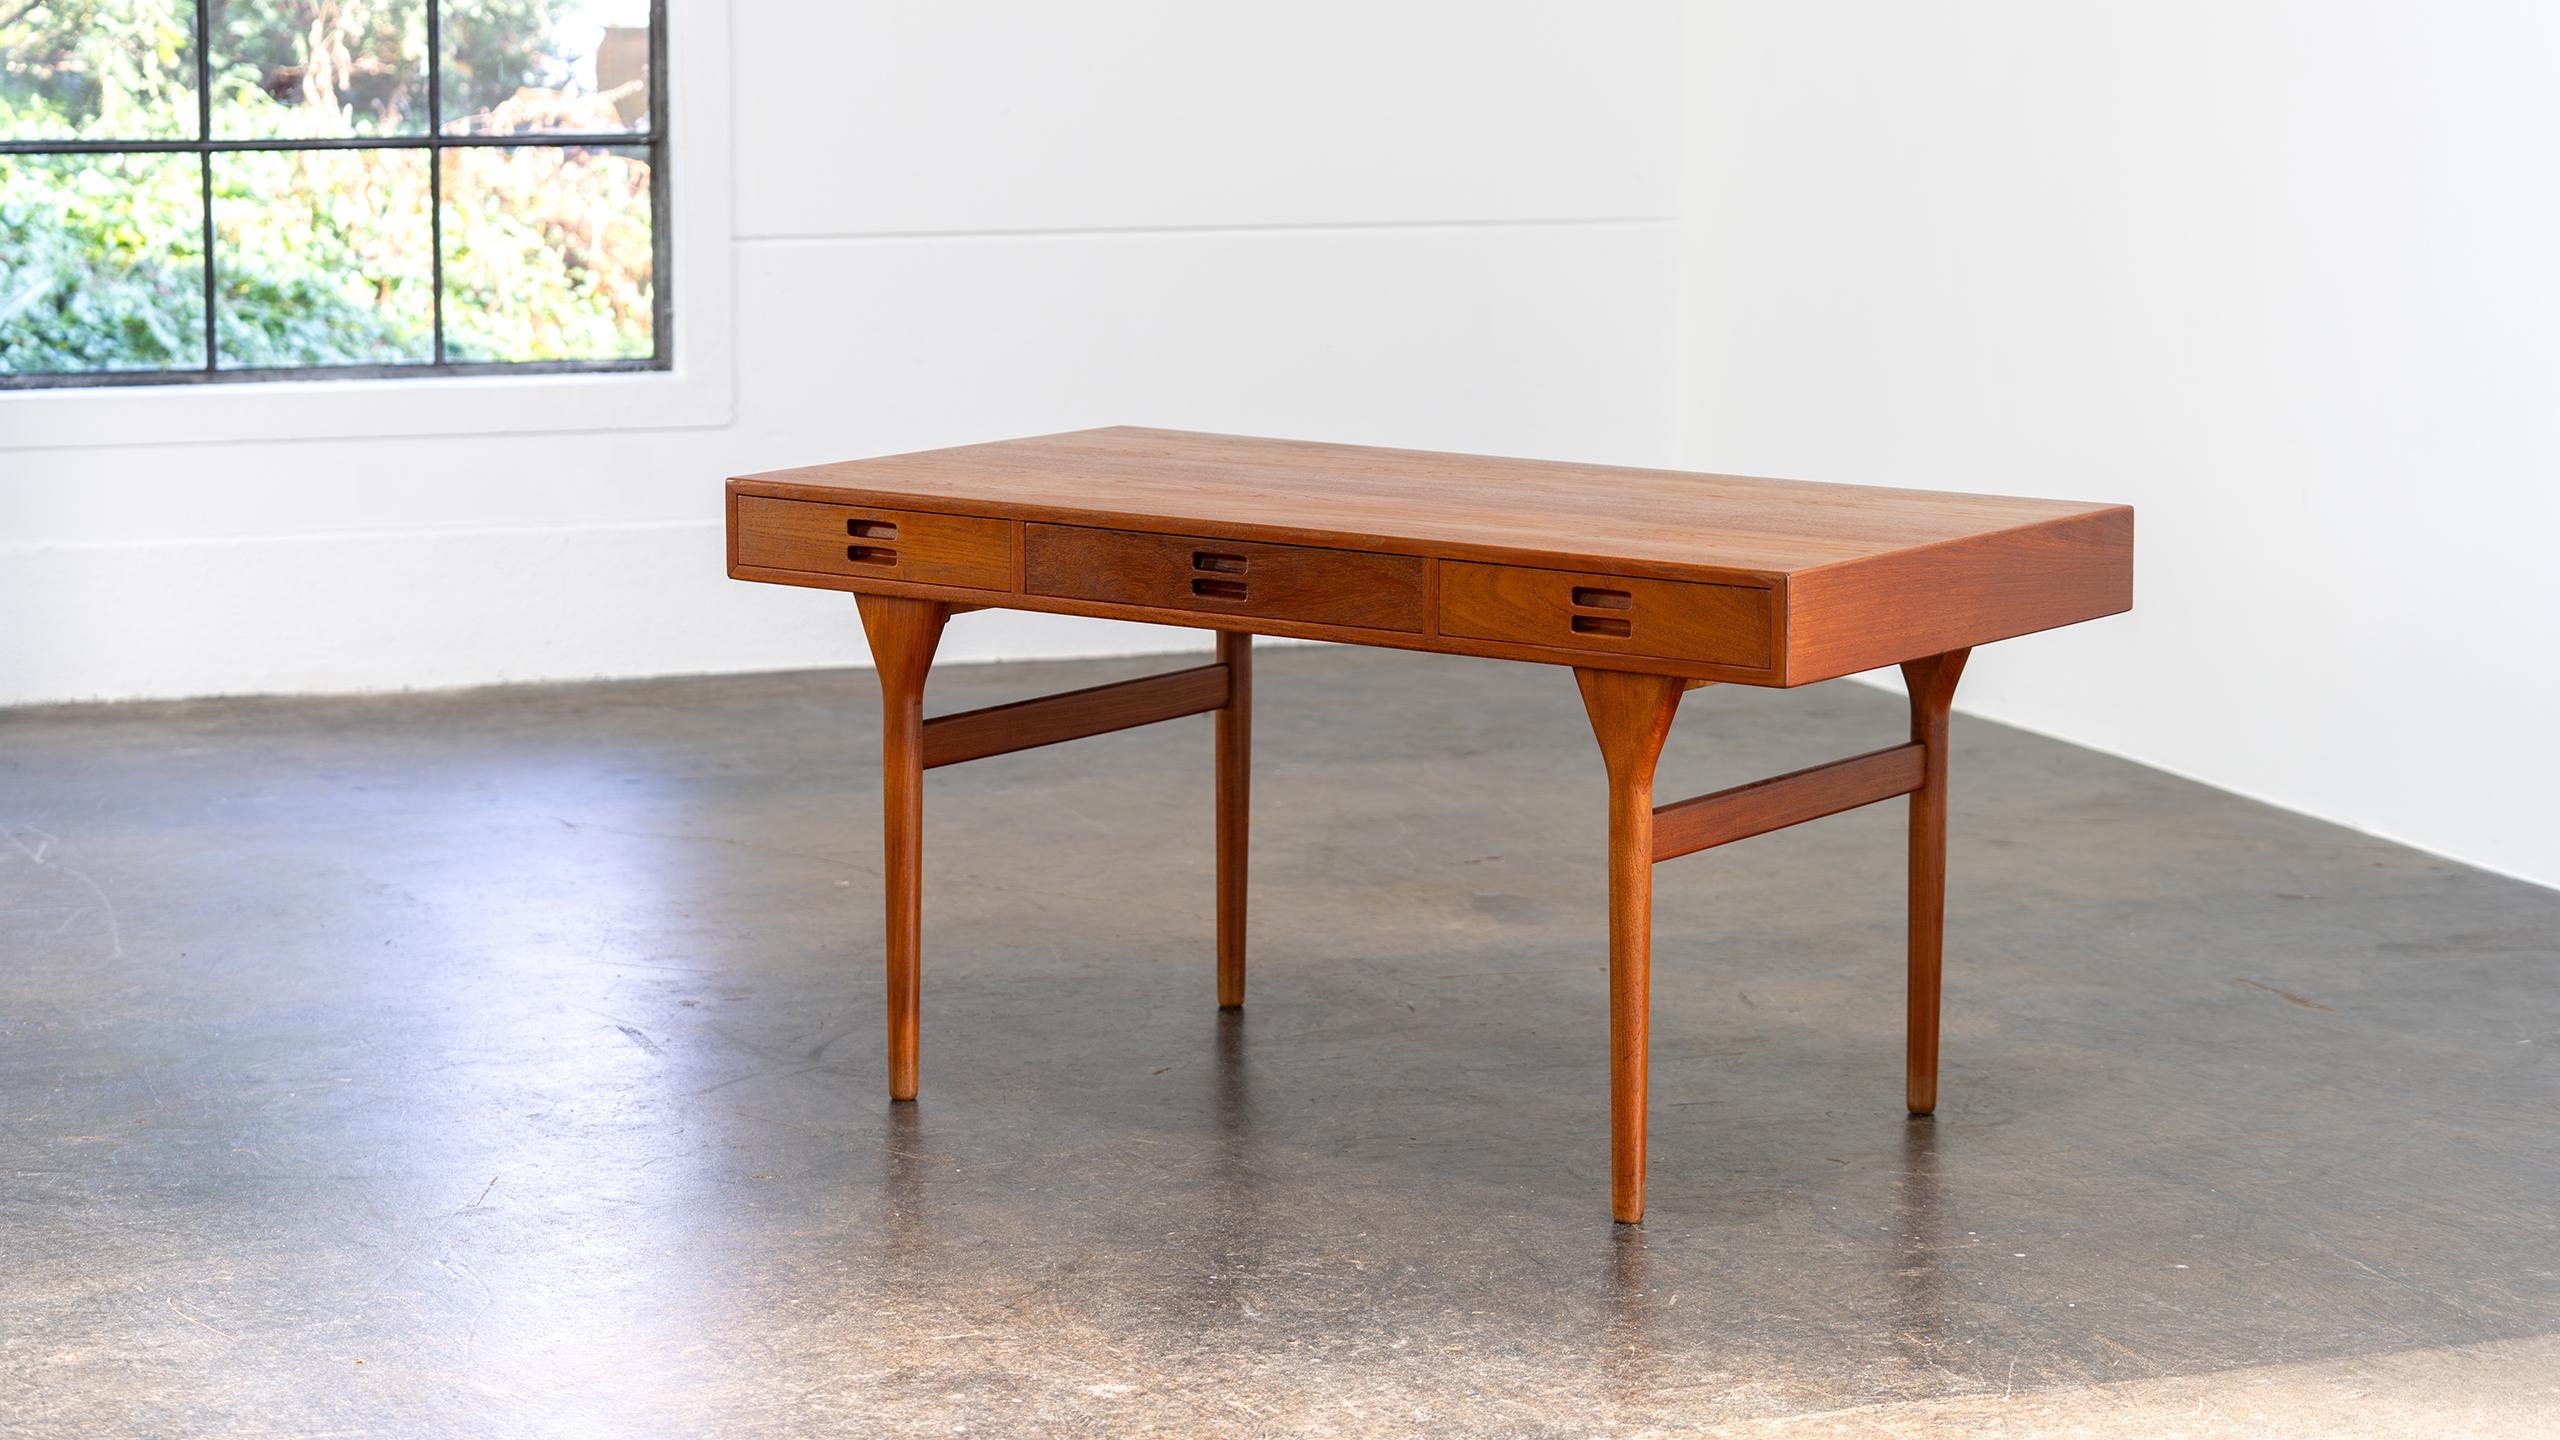 Nanna Ditzel Table Desk in Teak Søren Willadsen 1958 Denmark Mid Century Modern For Sale 3